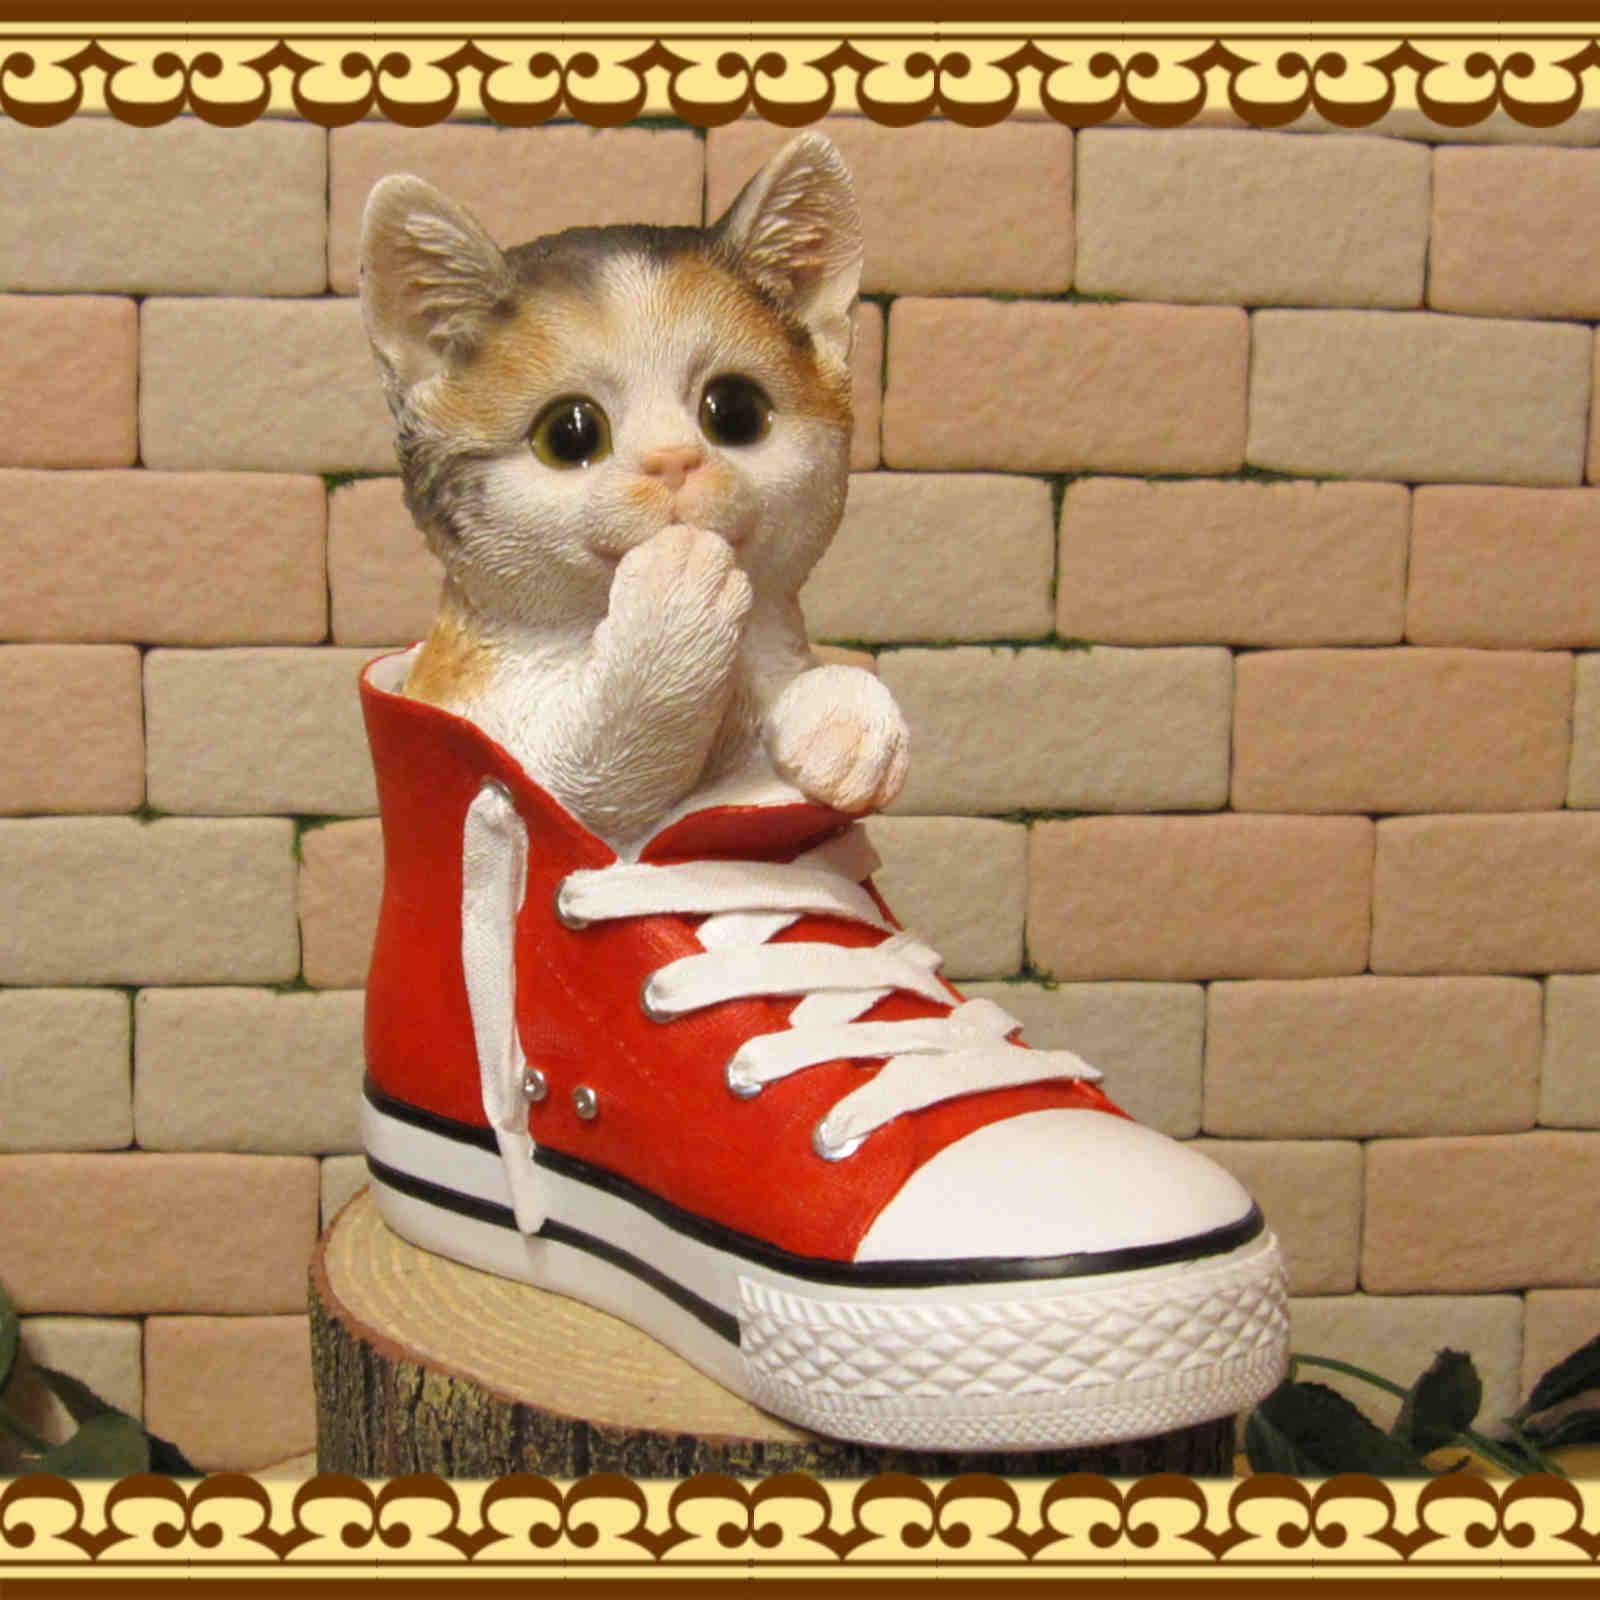 猫の置物 シューズキャット ミケ みけねこオブジェ 三毛猫 レジン製 ネコフィギュア インテリア ガーデニング素材 かわいい動物グッズの通販なら 雑貨の森 Ki Ra Ra